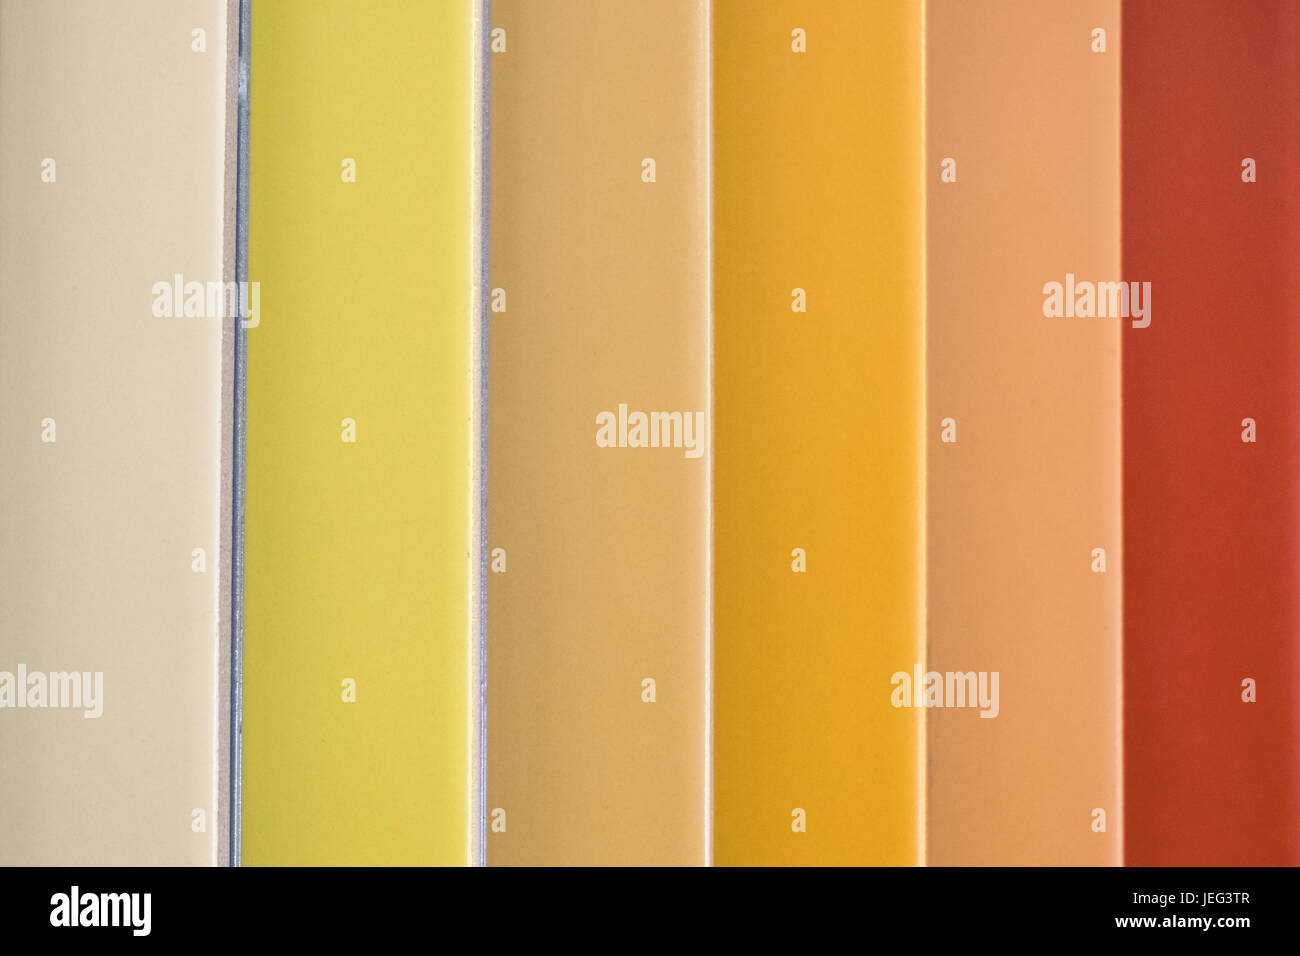 bunte Keramikfliesen - Variation der verschiedenen farbigen Fliesen - Fliesen-Farbmuster Stockfoto